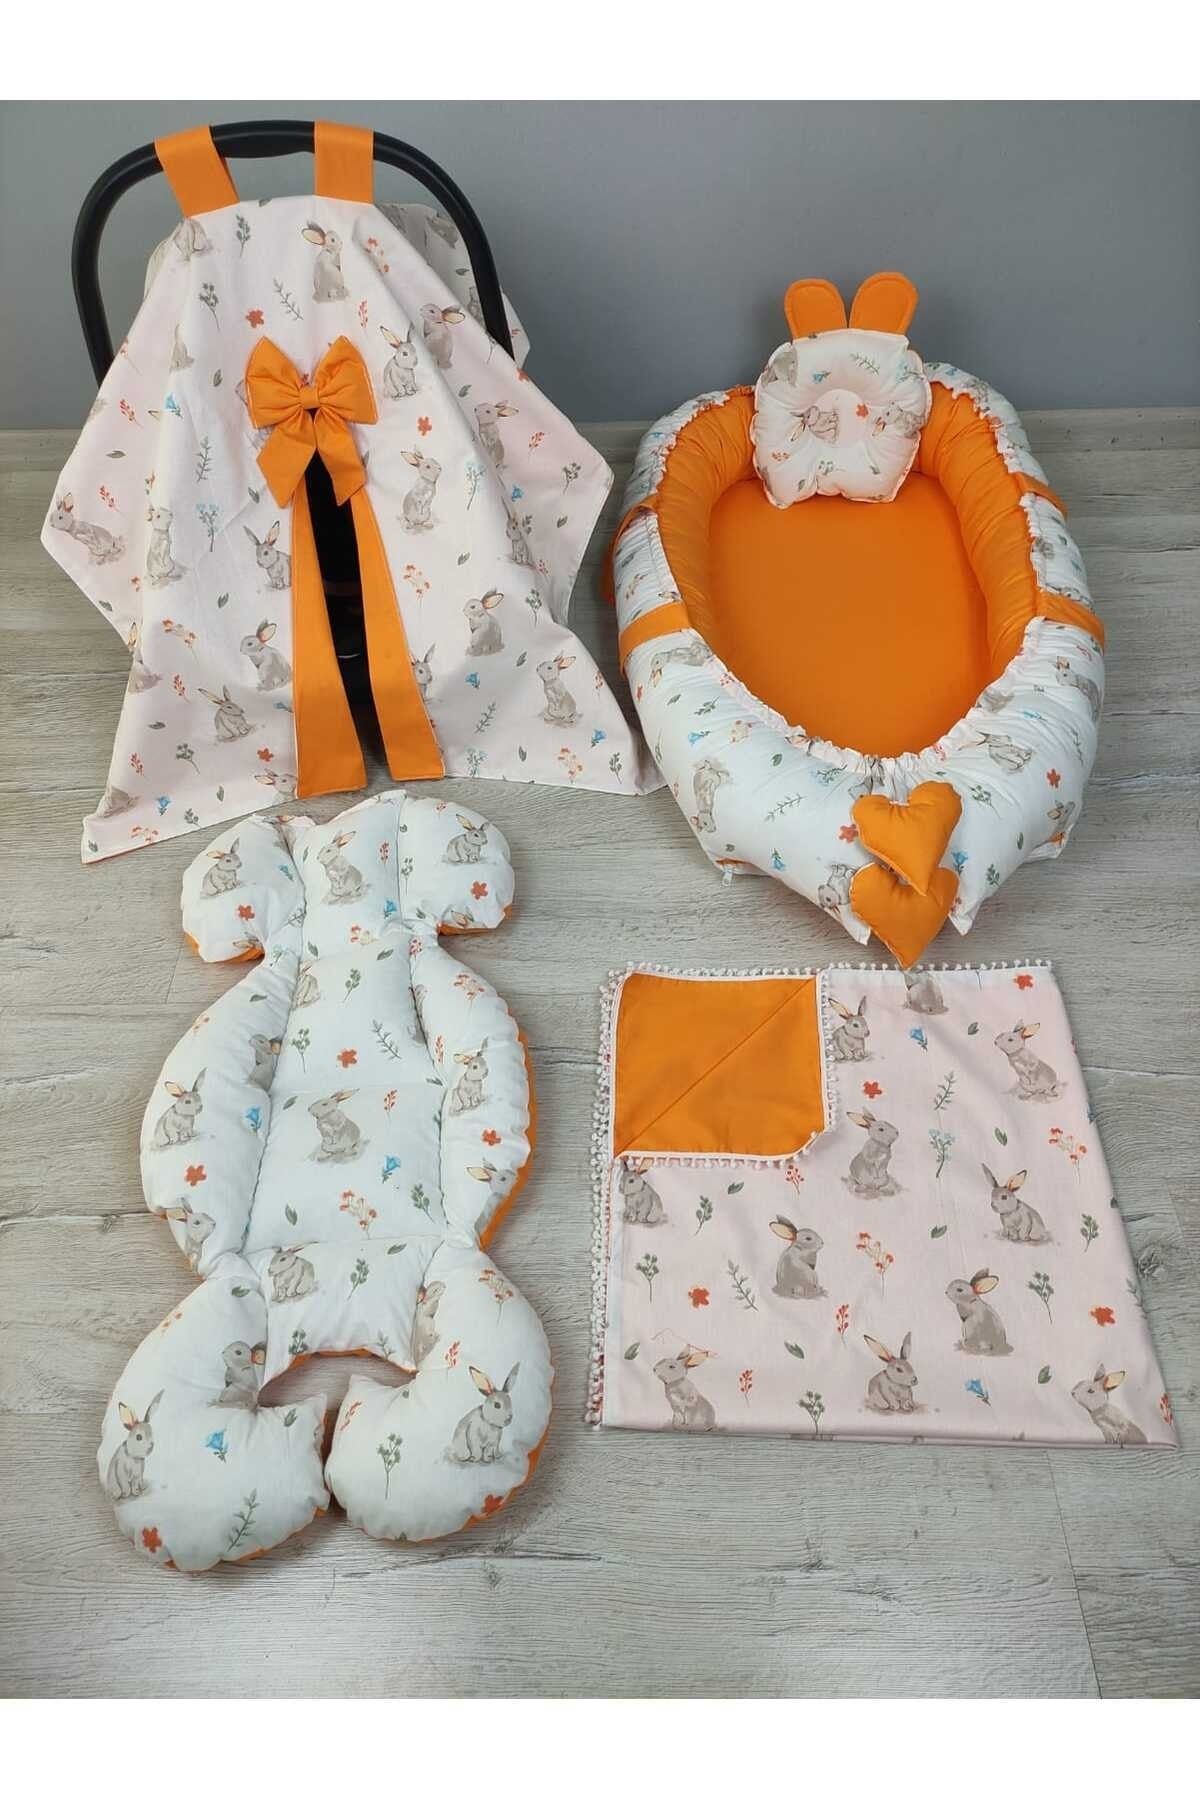 BABYNEST SEPETi Babynest, Tatlı Tavşan Desen ve Turuncu Renk Kombin Orijinal Bebek Yatağı Seti